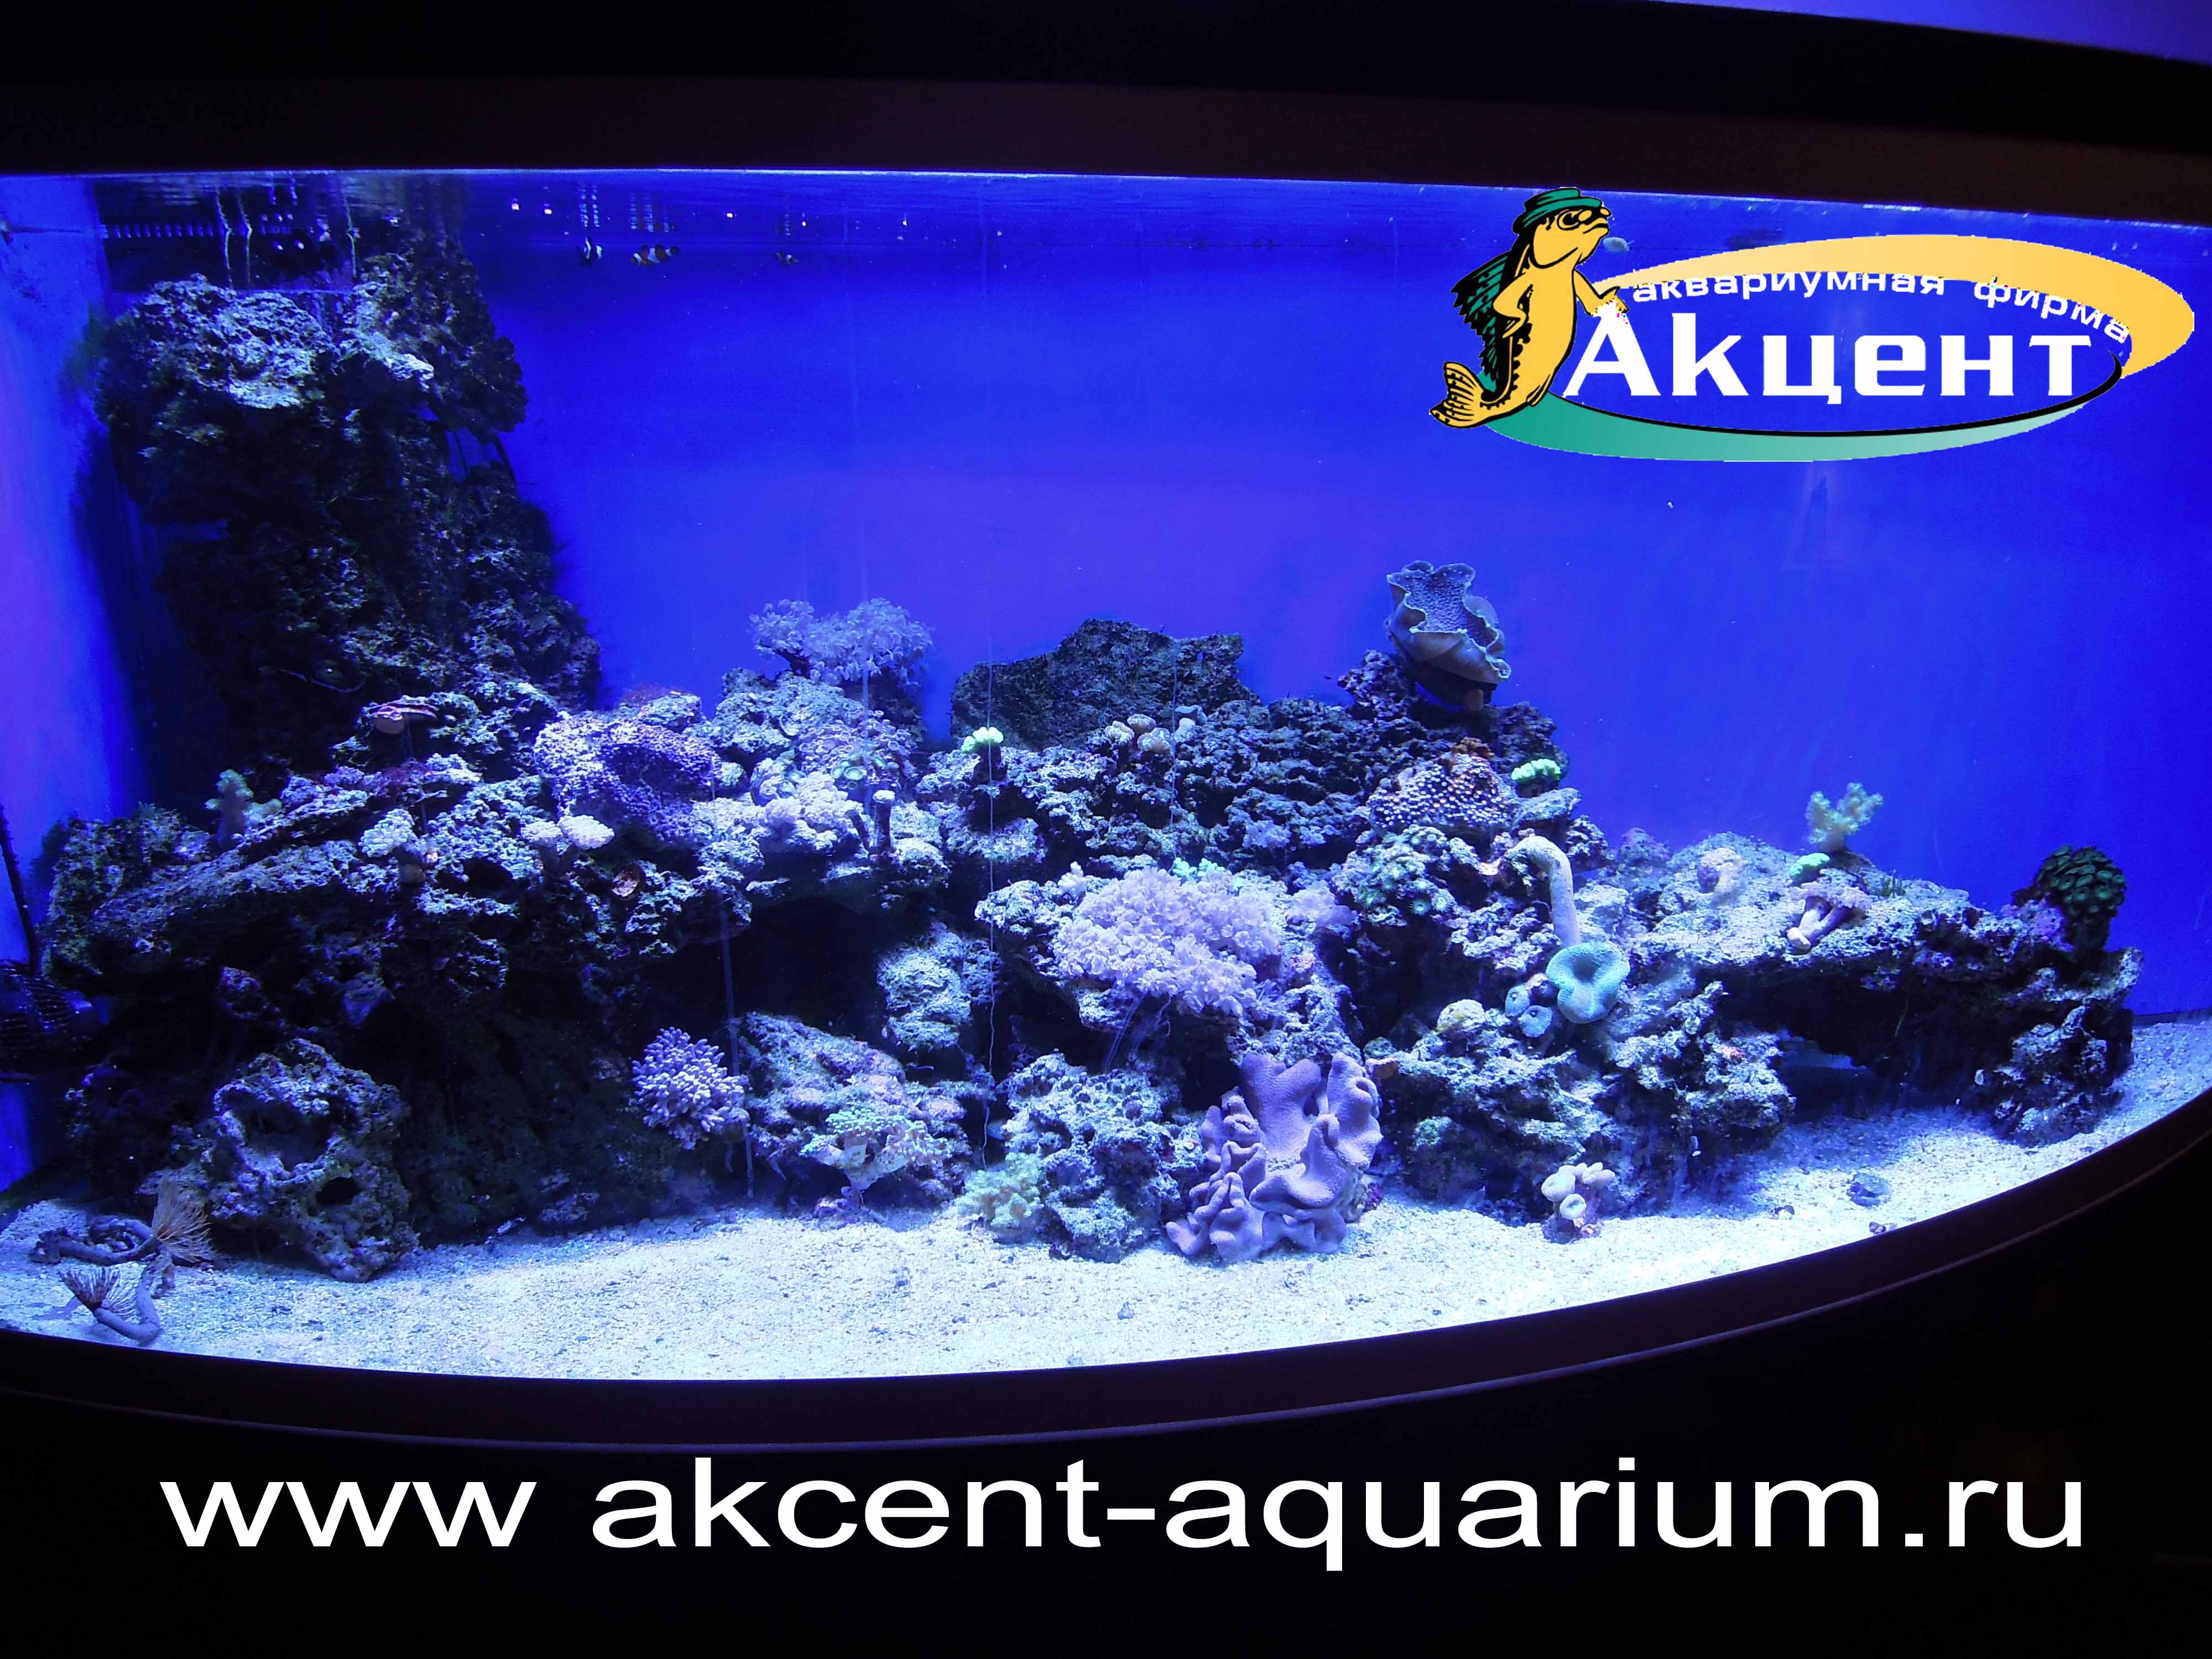 Акцент-аквариум, угловой морской аквариум с гнутым стеклом 800 литров, живые камни, мягкие кораллы, жесткие кораллы